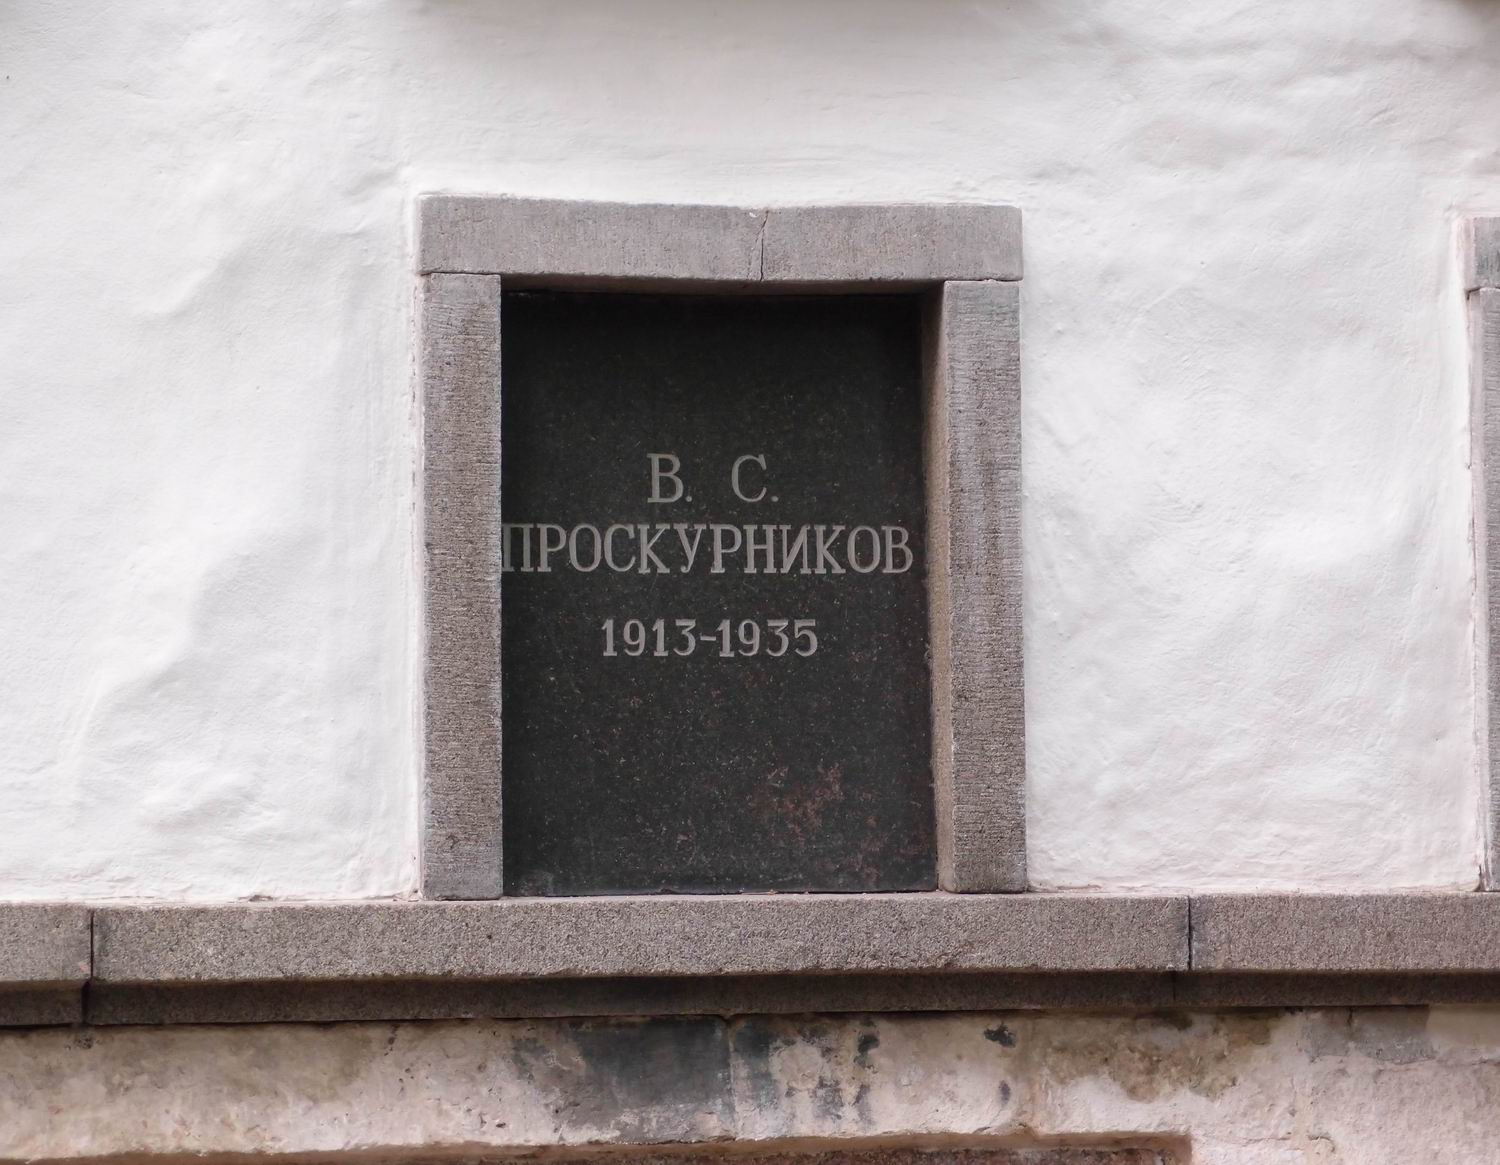 Плита на нише Проскурникова В.С. (1913-1935), на Новодевичьем кладбище (колумбарий [3]-27). Нажмите левую кнопку мыши, чтобы увидеть общий вид секции.